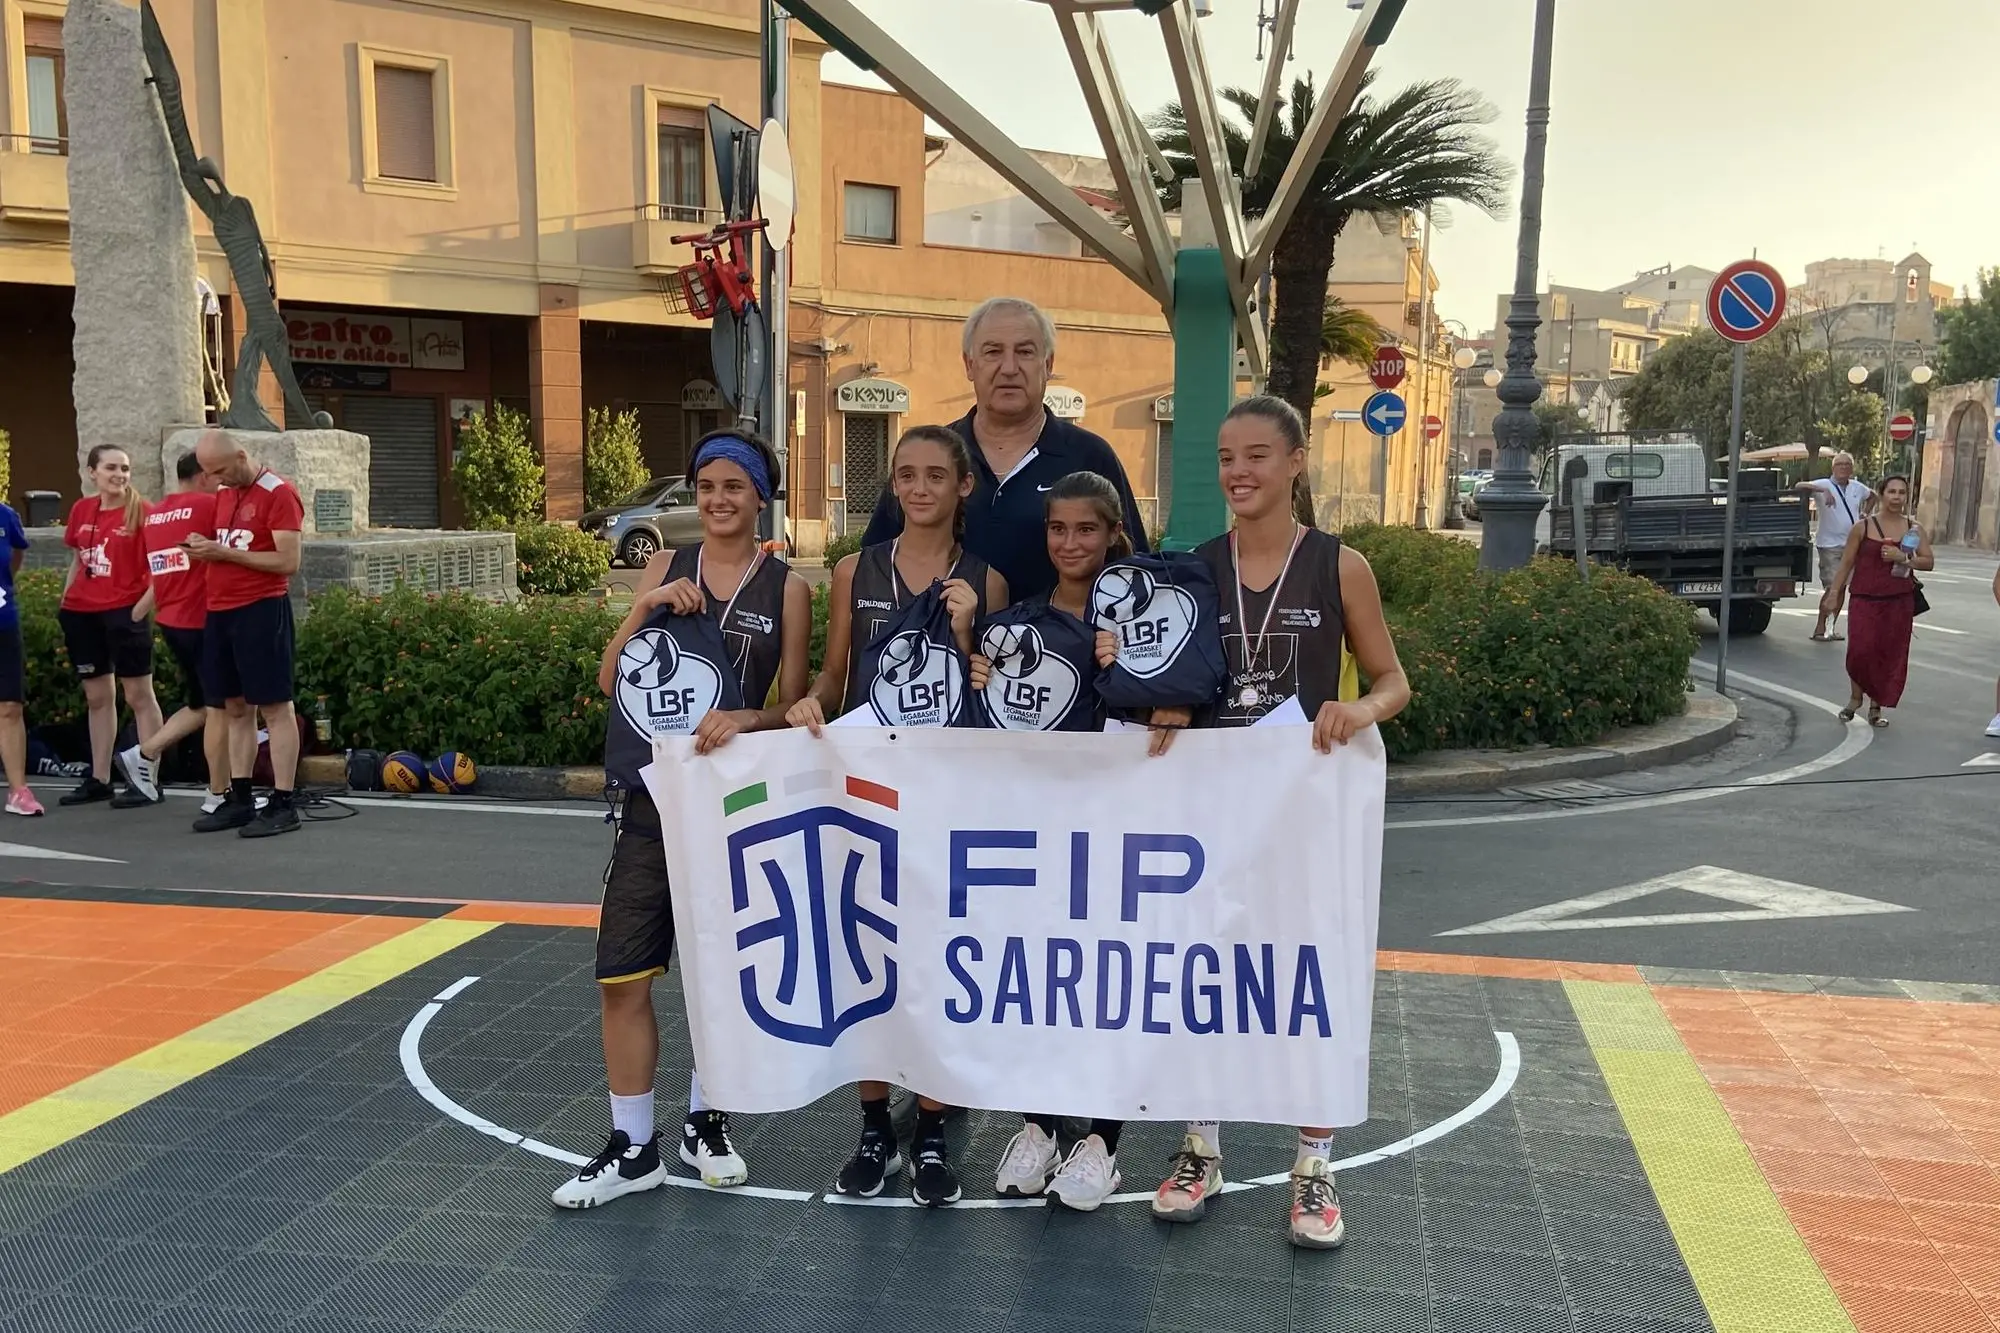 Team Alghero, formazione vincitrice della categoria Under 14 femminile (Foto concessa da Fip Sardegna)